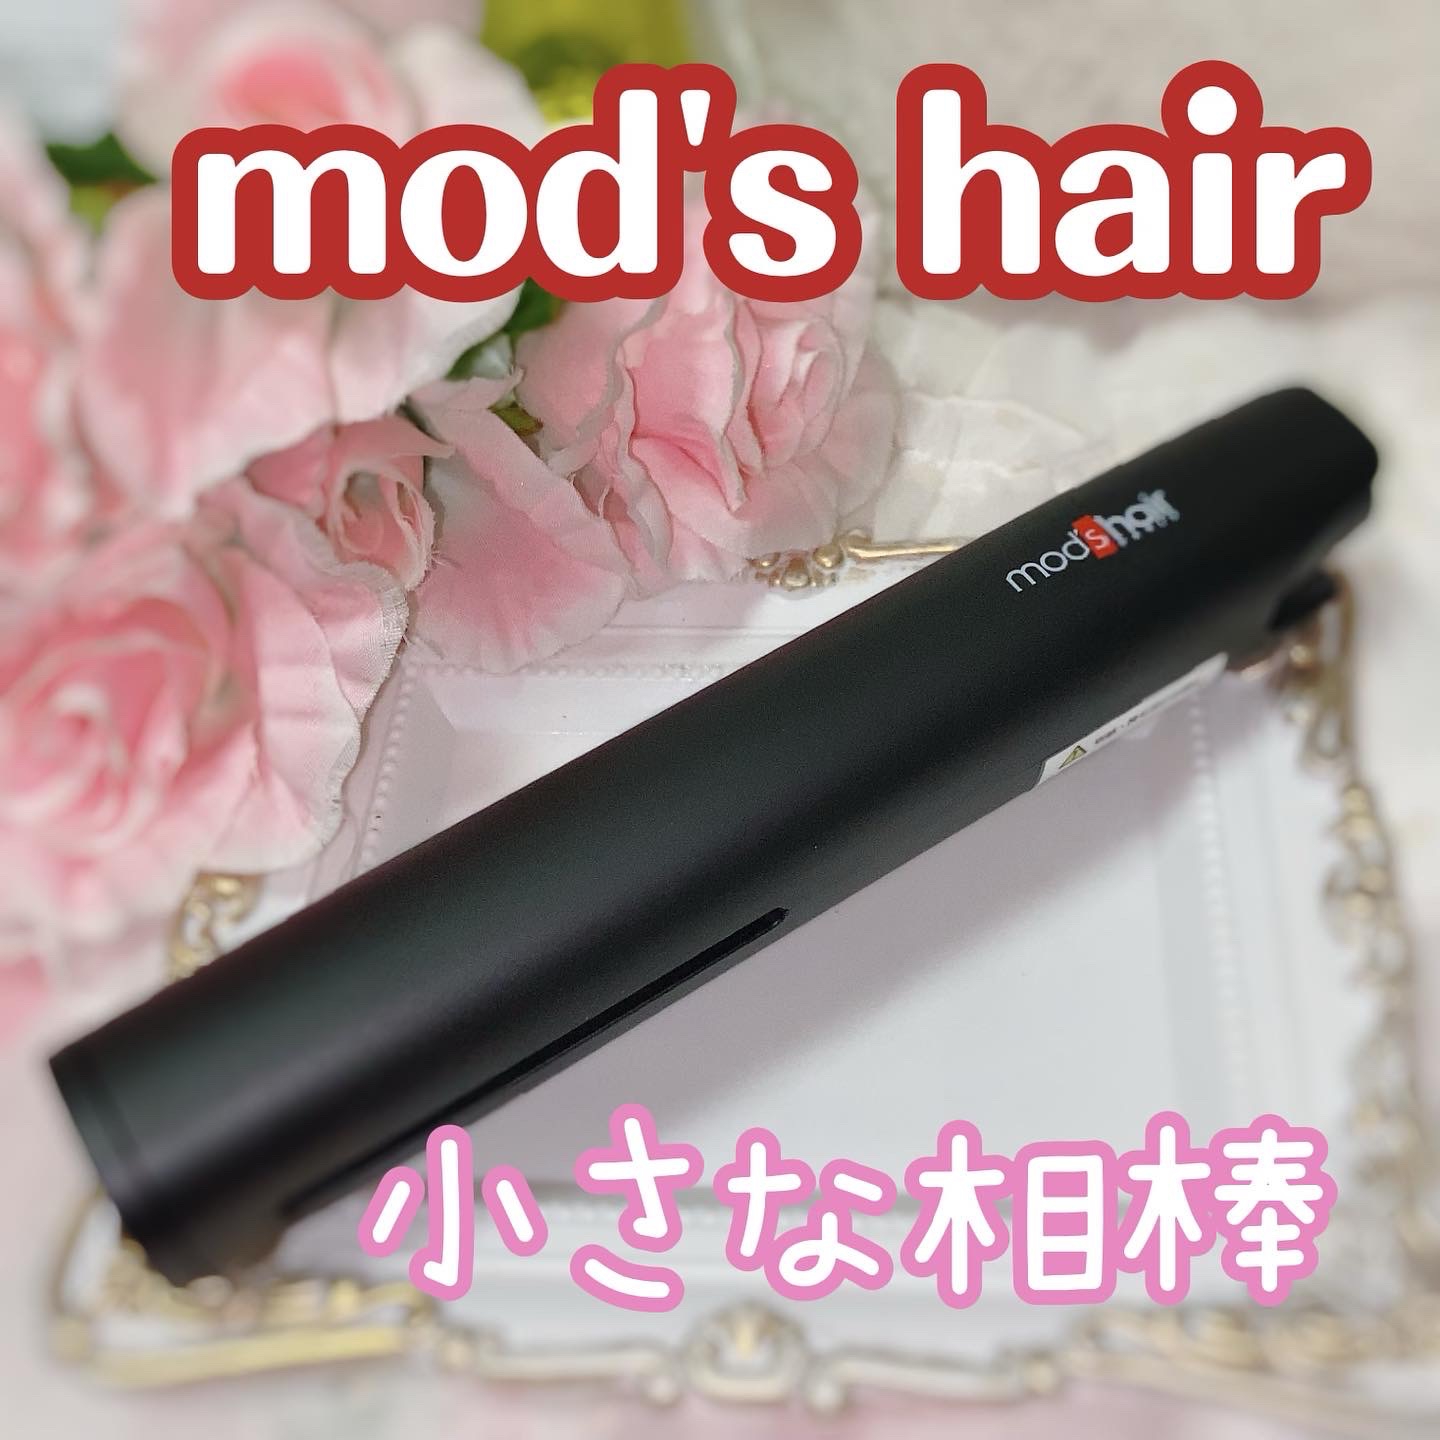 mod’s hair(モッズ・ヘア) スタイリッシュ モバイルヘアアイロンプラス MHS-1240の良い点・メリットに関する珈琲豆♡さんの口コミ画像1